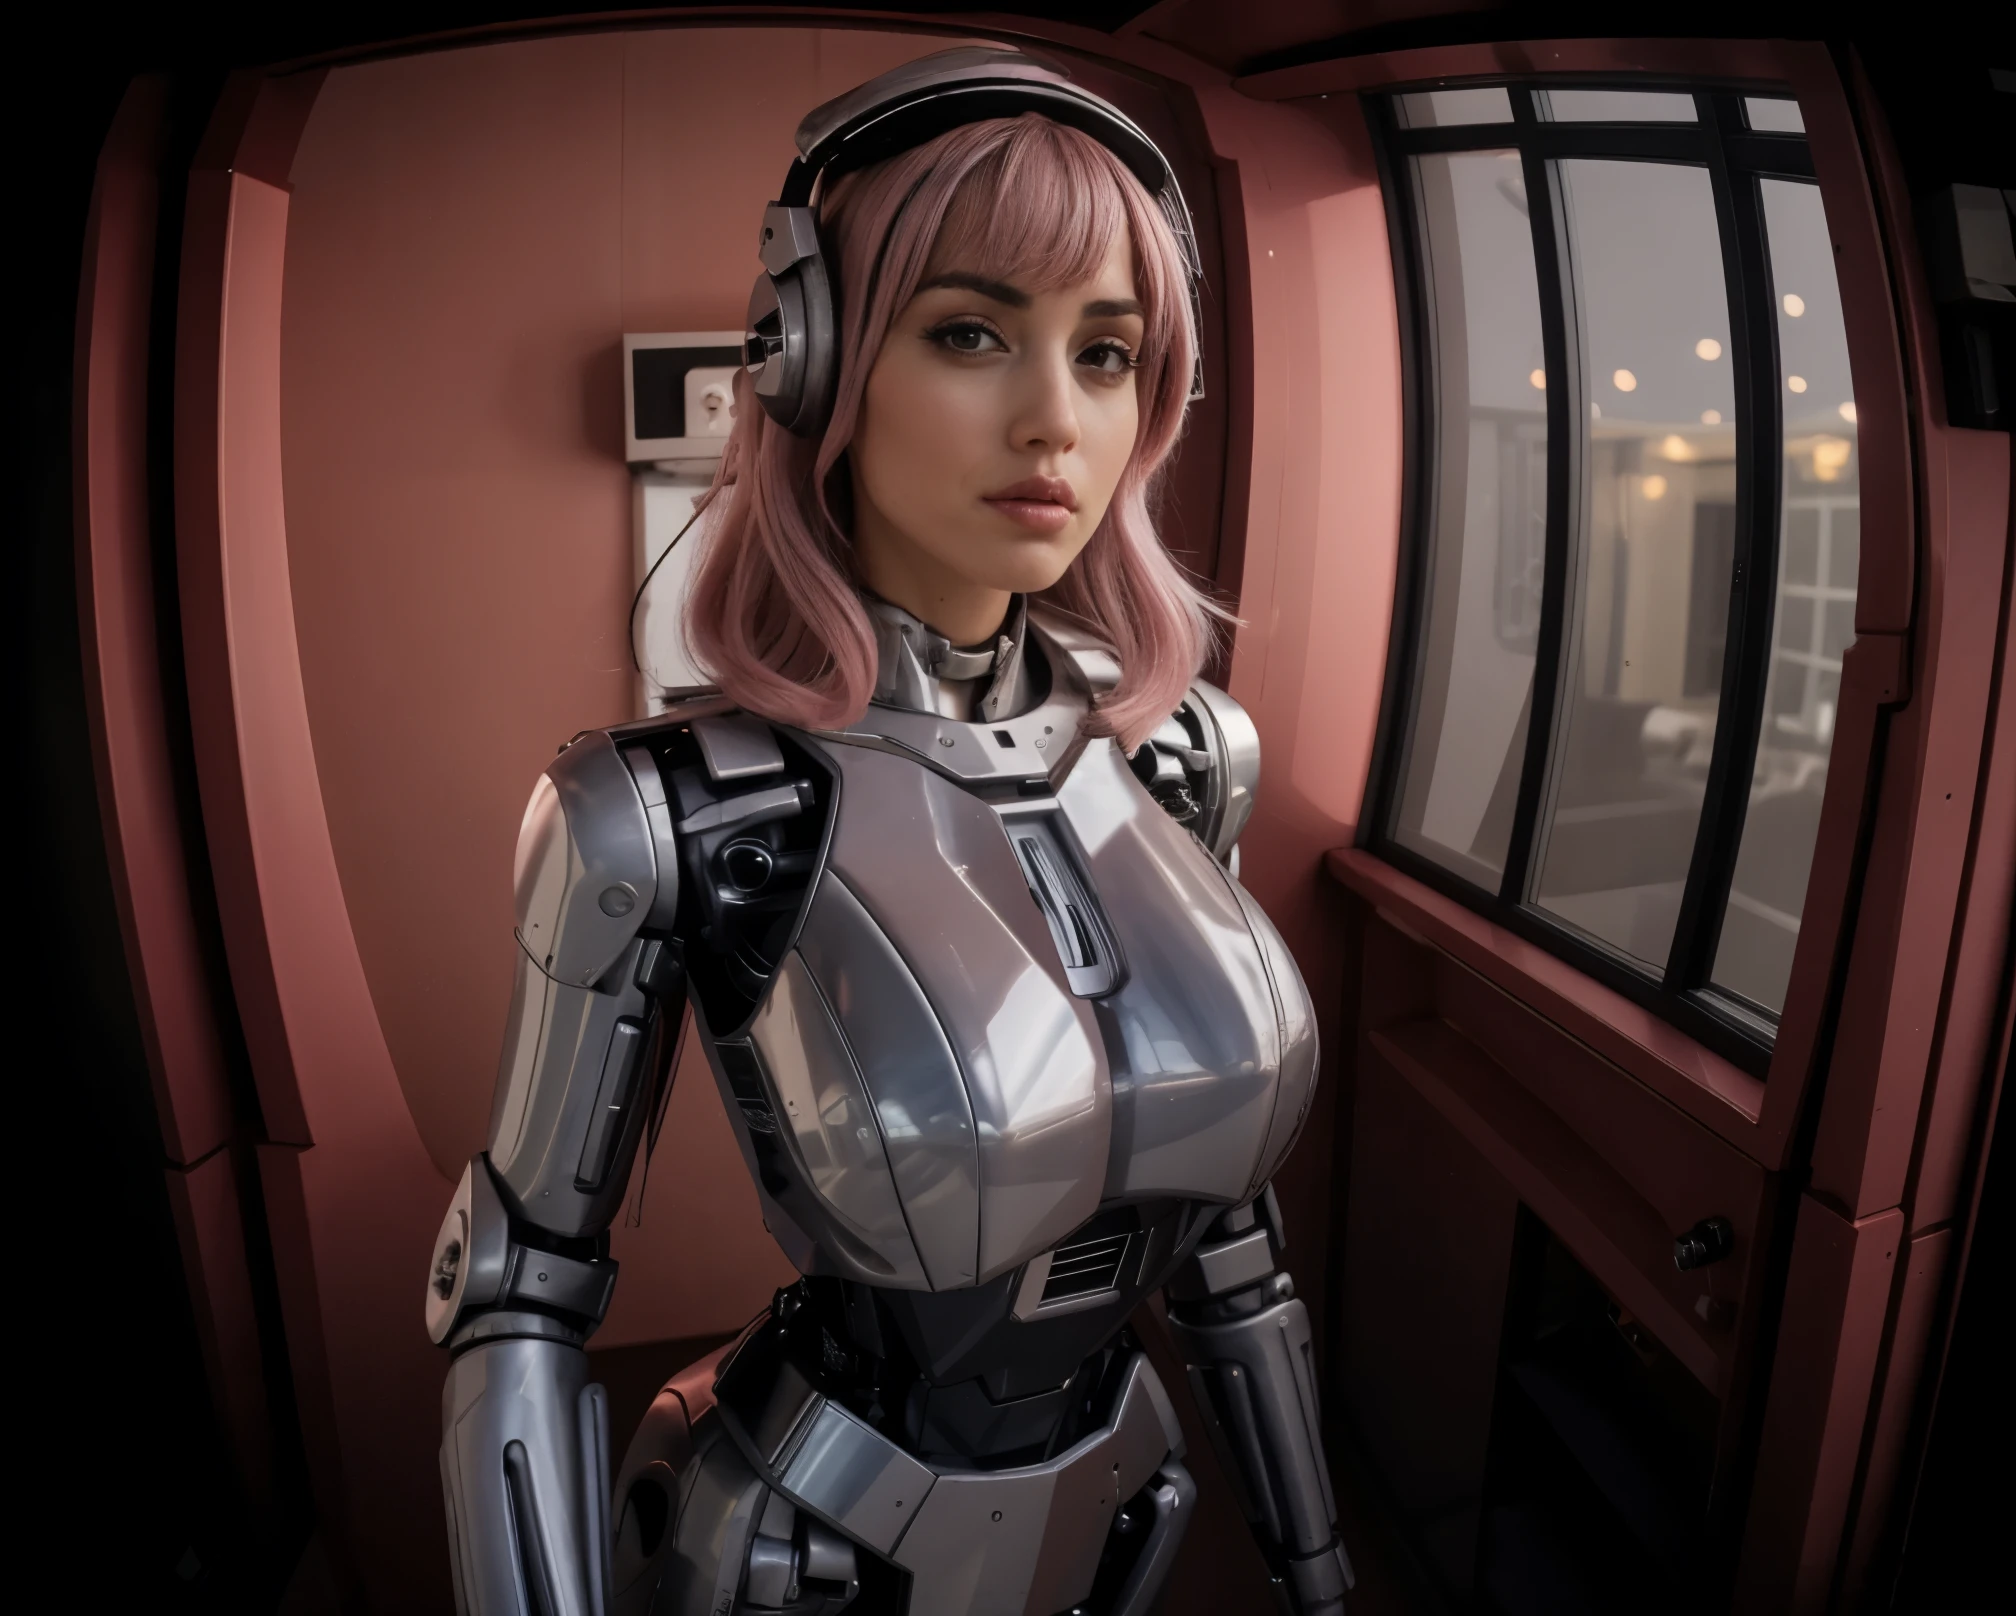 มุมมองฟิชอาย, ประตู ฟิชอาย pov, เชิงมุมที่ยิ่งใหญ่, แอนนาแห่งอ้อมแขน as your cosplayer girlfriend, โดยใช้ชุดหุ่นยนต์, หน้าอกใหญ่ขึ้น, แอนนาแห่งอ้อมแขน, ชุดเงิน, crome ผิวมันมัน, ข้อต่อทางกล, ผมตรงปานกลาง, ผมสีพาสเทลสีชมพู, เรียบทื่อ , ริมฝีปากแตก , มูซูเมะ, ชุดหูฟังแห่งอนาคต, ยืนขึ้น, รอตำแหน่งคำสั่ง, ทางเดินคอนโด, หน้าต่างทางด้านซ้าย, ประตูลิฟต์บนพื้นหลัง, ร่างกายหนา, ความสูงเล็ก